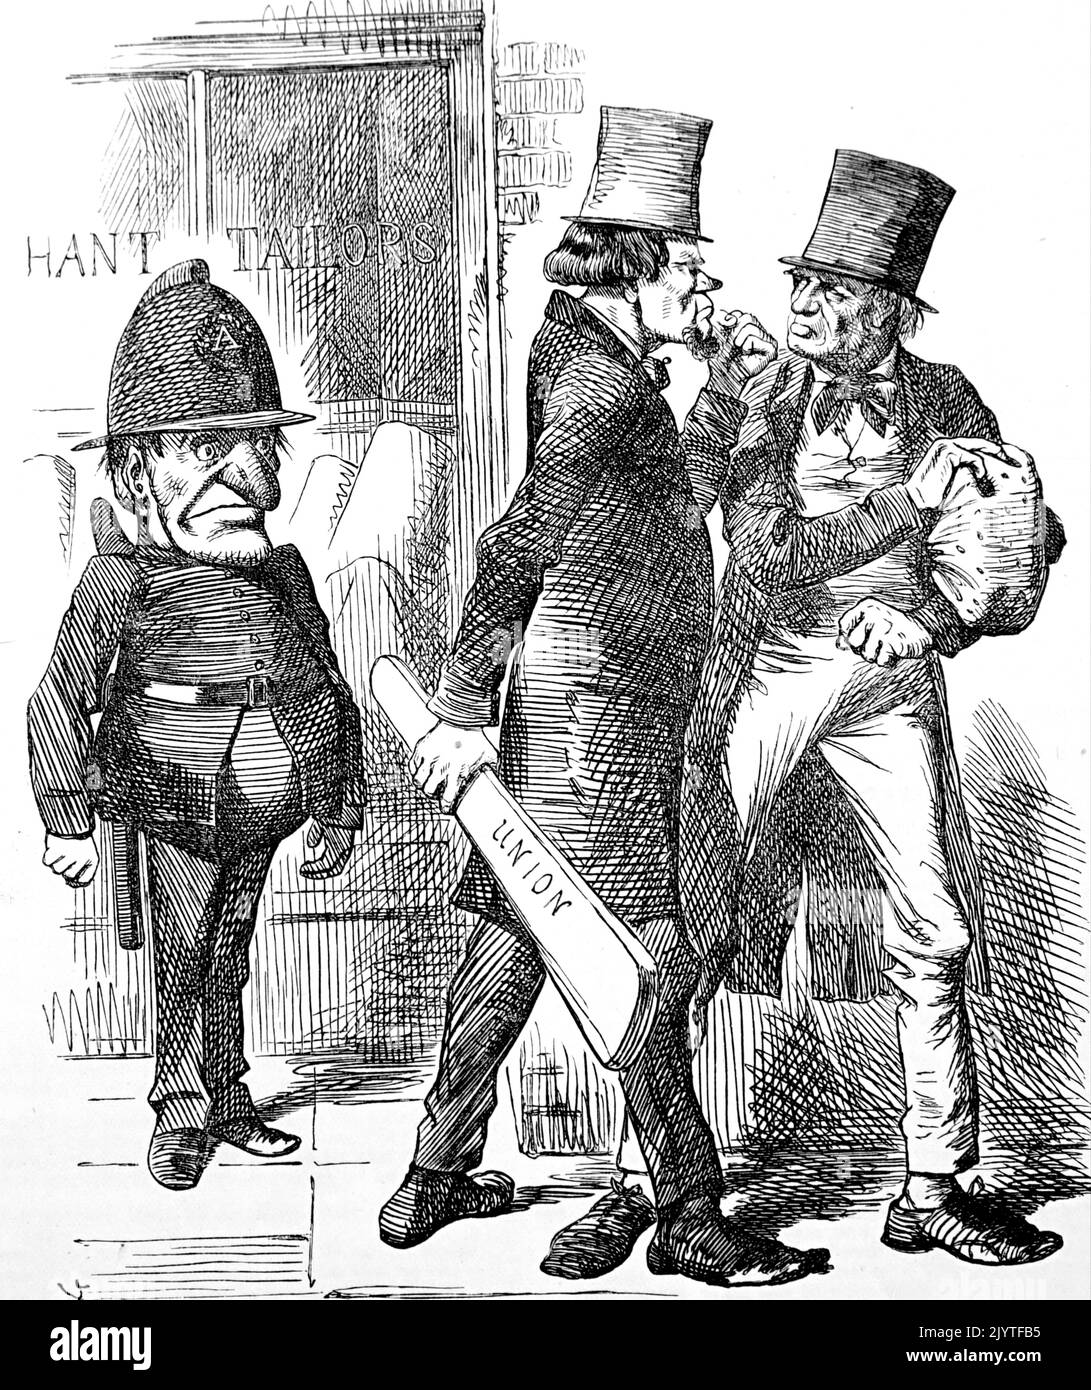 Dessin animé représentant « R. Punch » habillé comme policier, debout ferme devant des personnages syndicaux menaçants. Daté du 19th siècle Banque D'Images